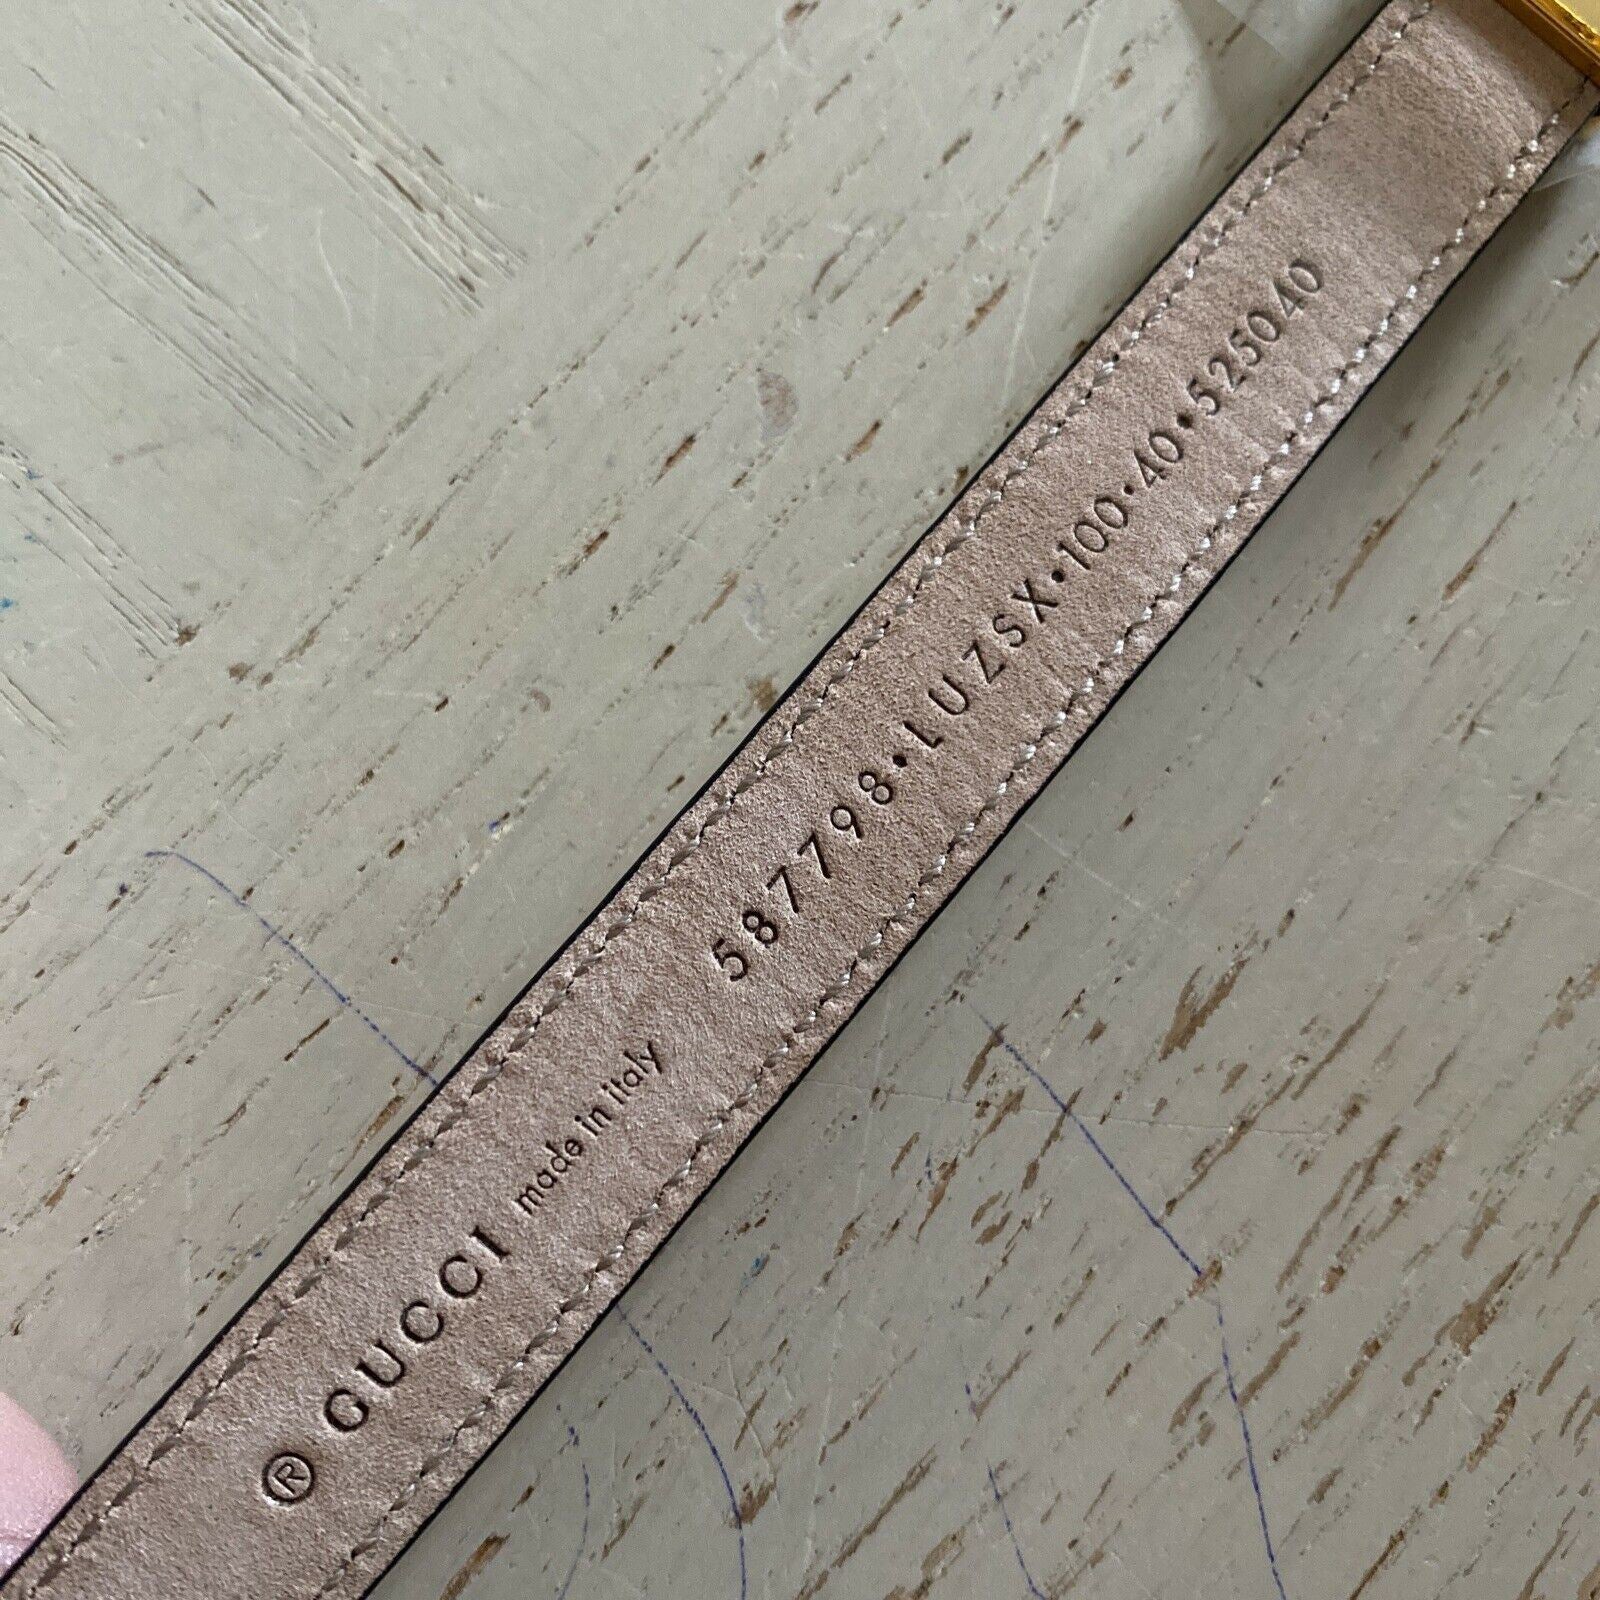 Neuer Gucci Herren-Ledergürtel mit kleiner Breite, Beige/Gelb, 100/40, Italien